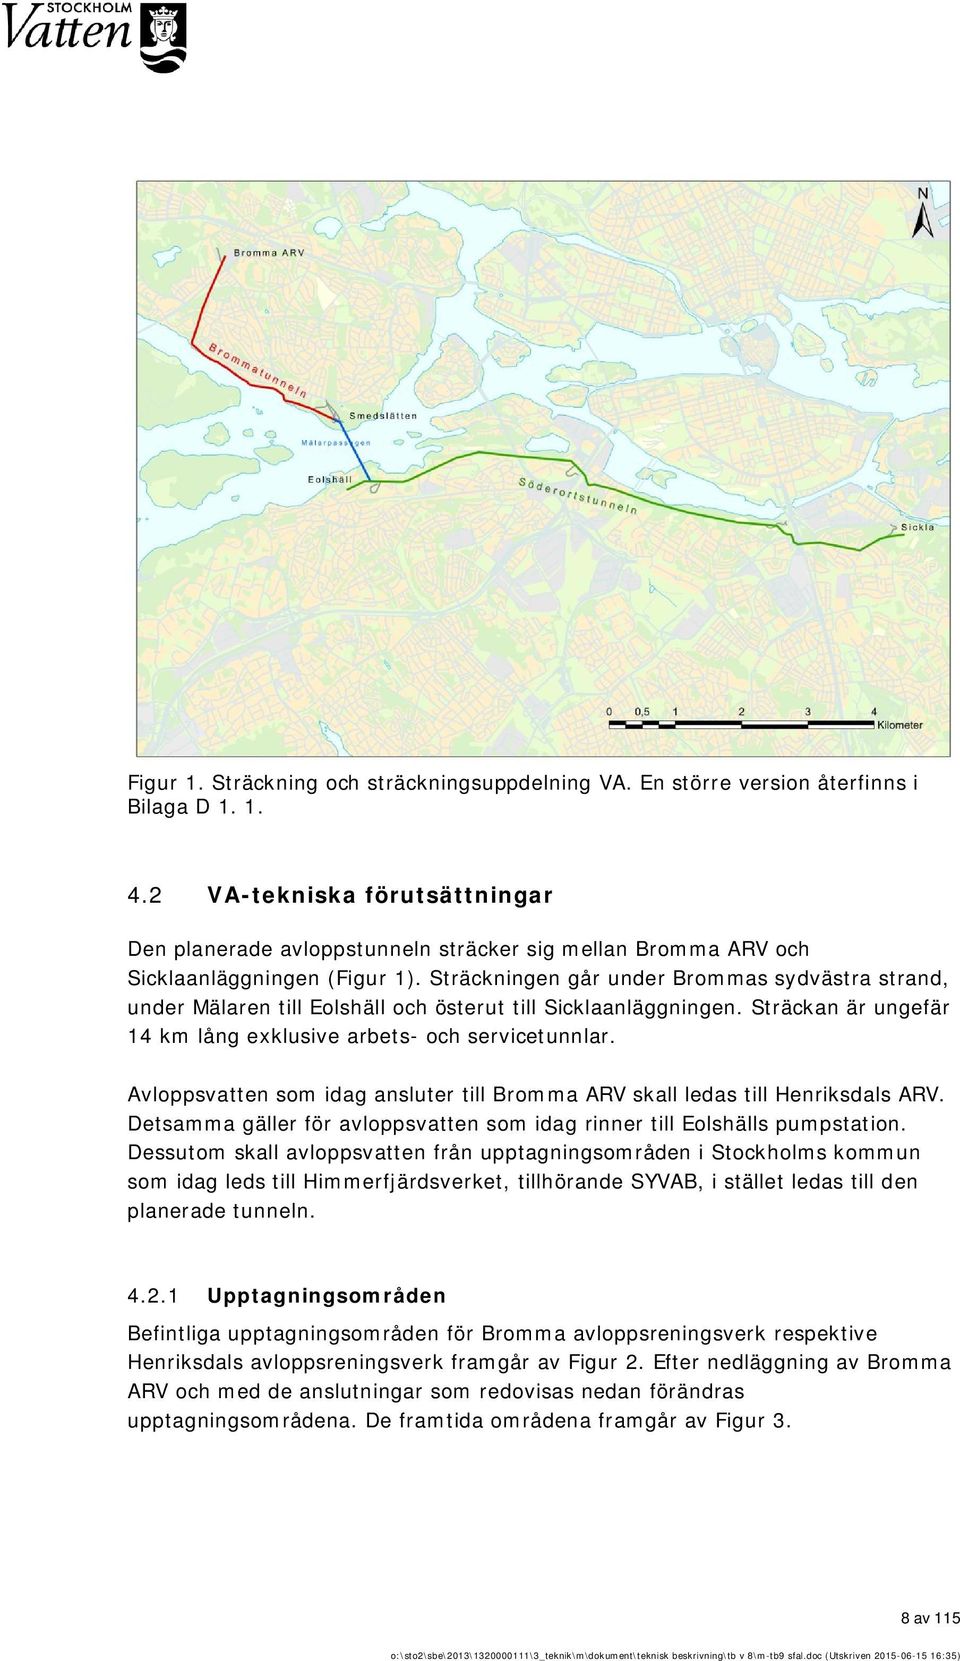 Sträckningen går under Brommas sydvästra strand, under Mälaren till Eolshäll och österut till Sicklaanläggningen. Sträckan är ungefär 14 km lång exklusive arbets- och servicetunnlar.